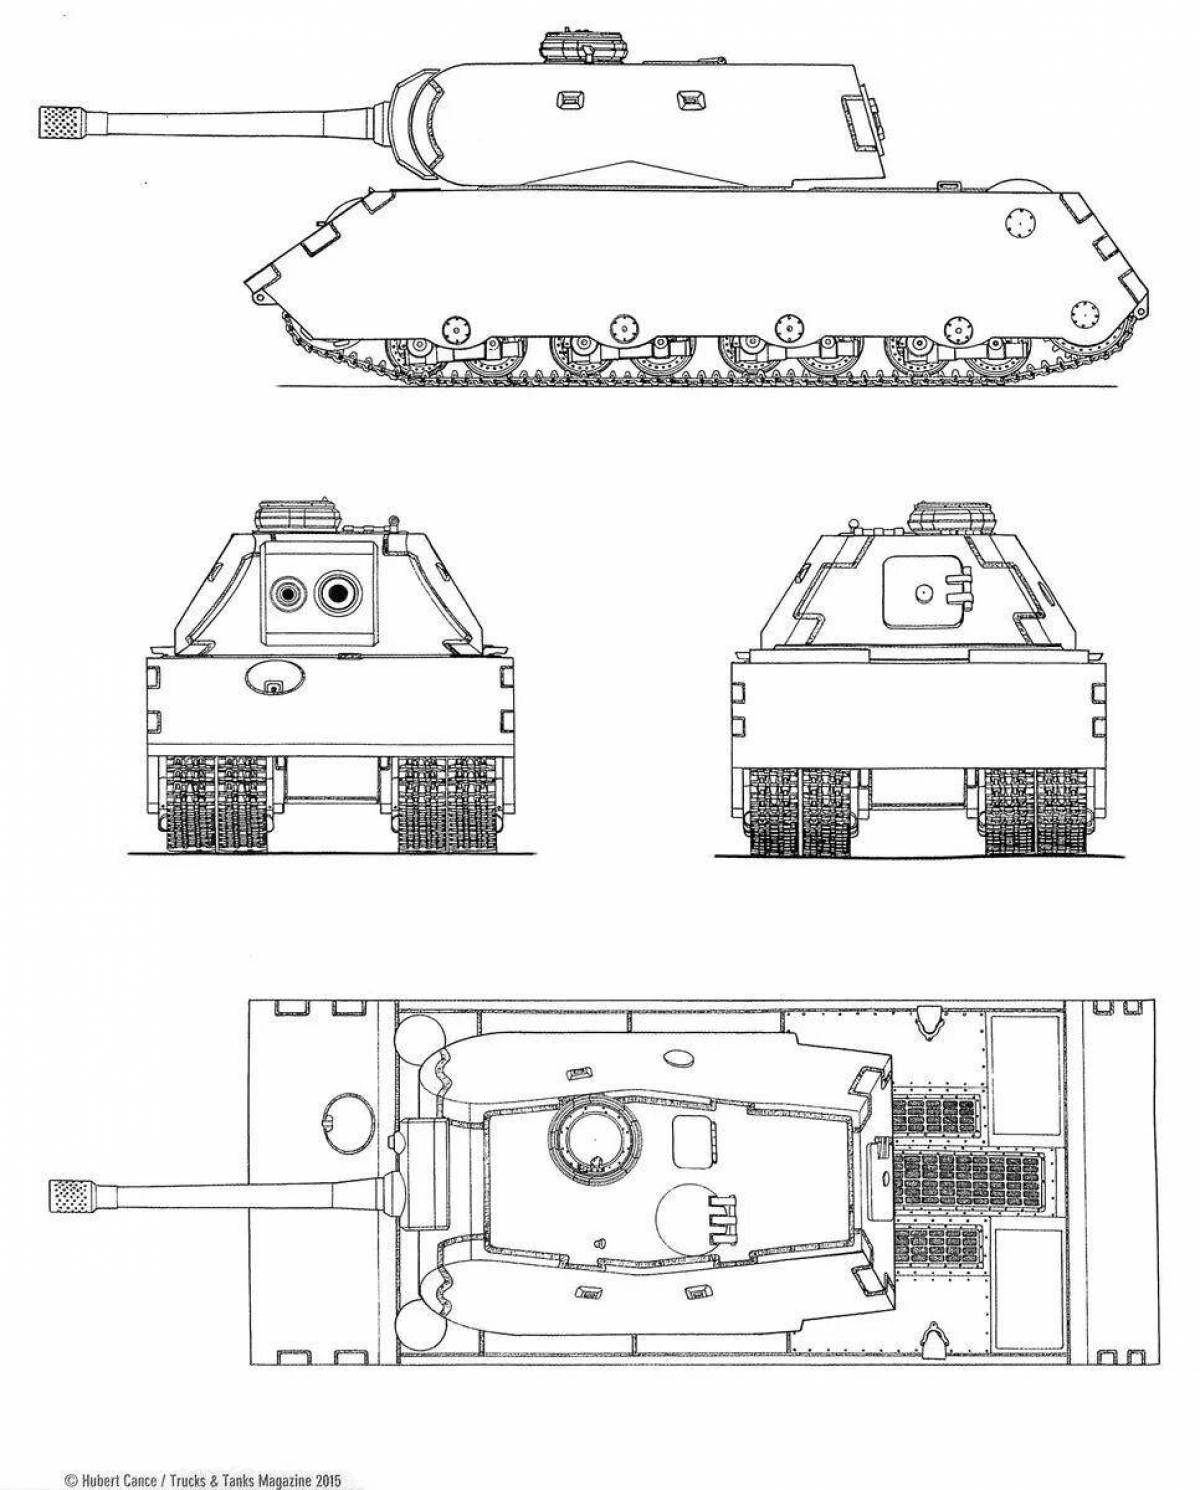 Увлекательная раскраска танка e100